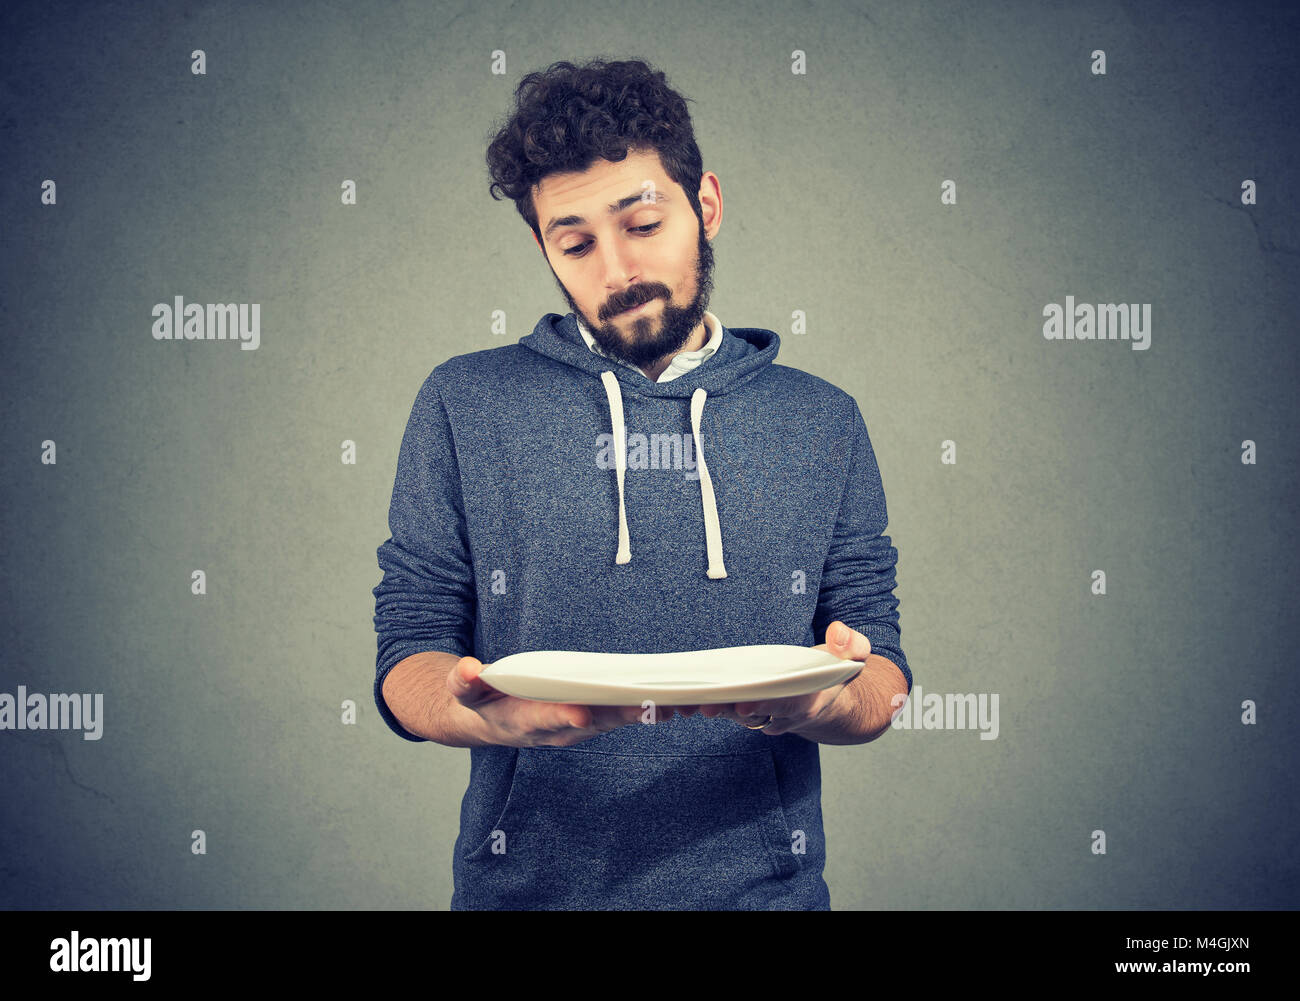 Junge bärtige Mann an leeren Teller in Dilemma mit Diät Wahl suchen. Stockfoto